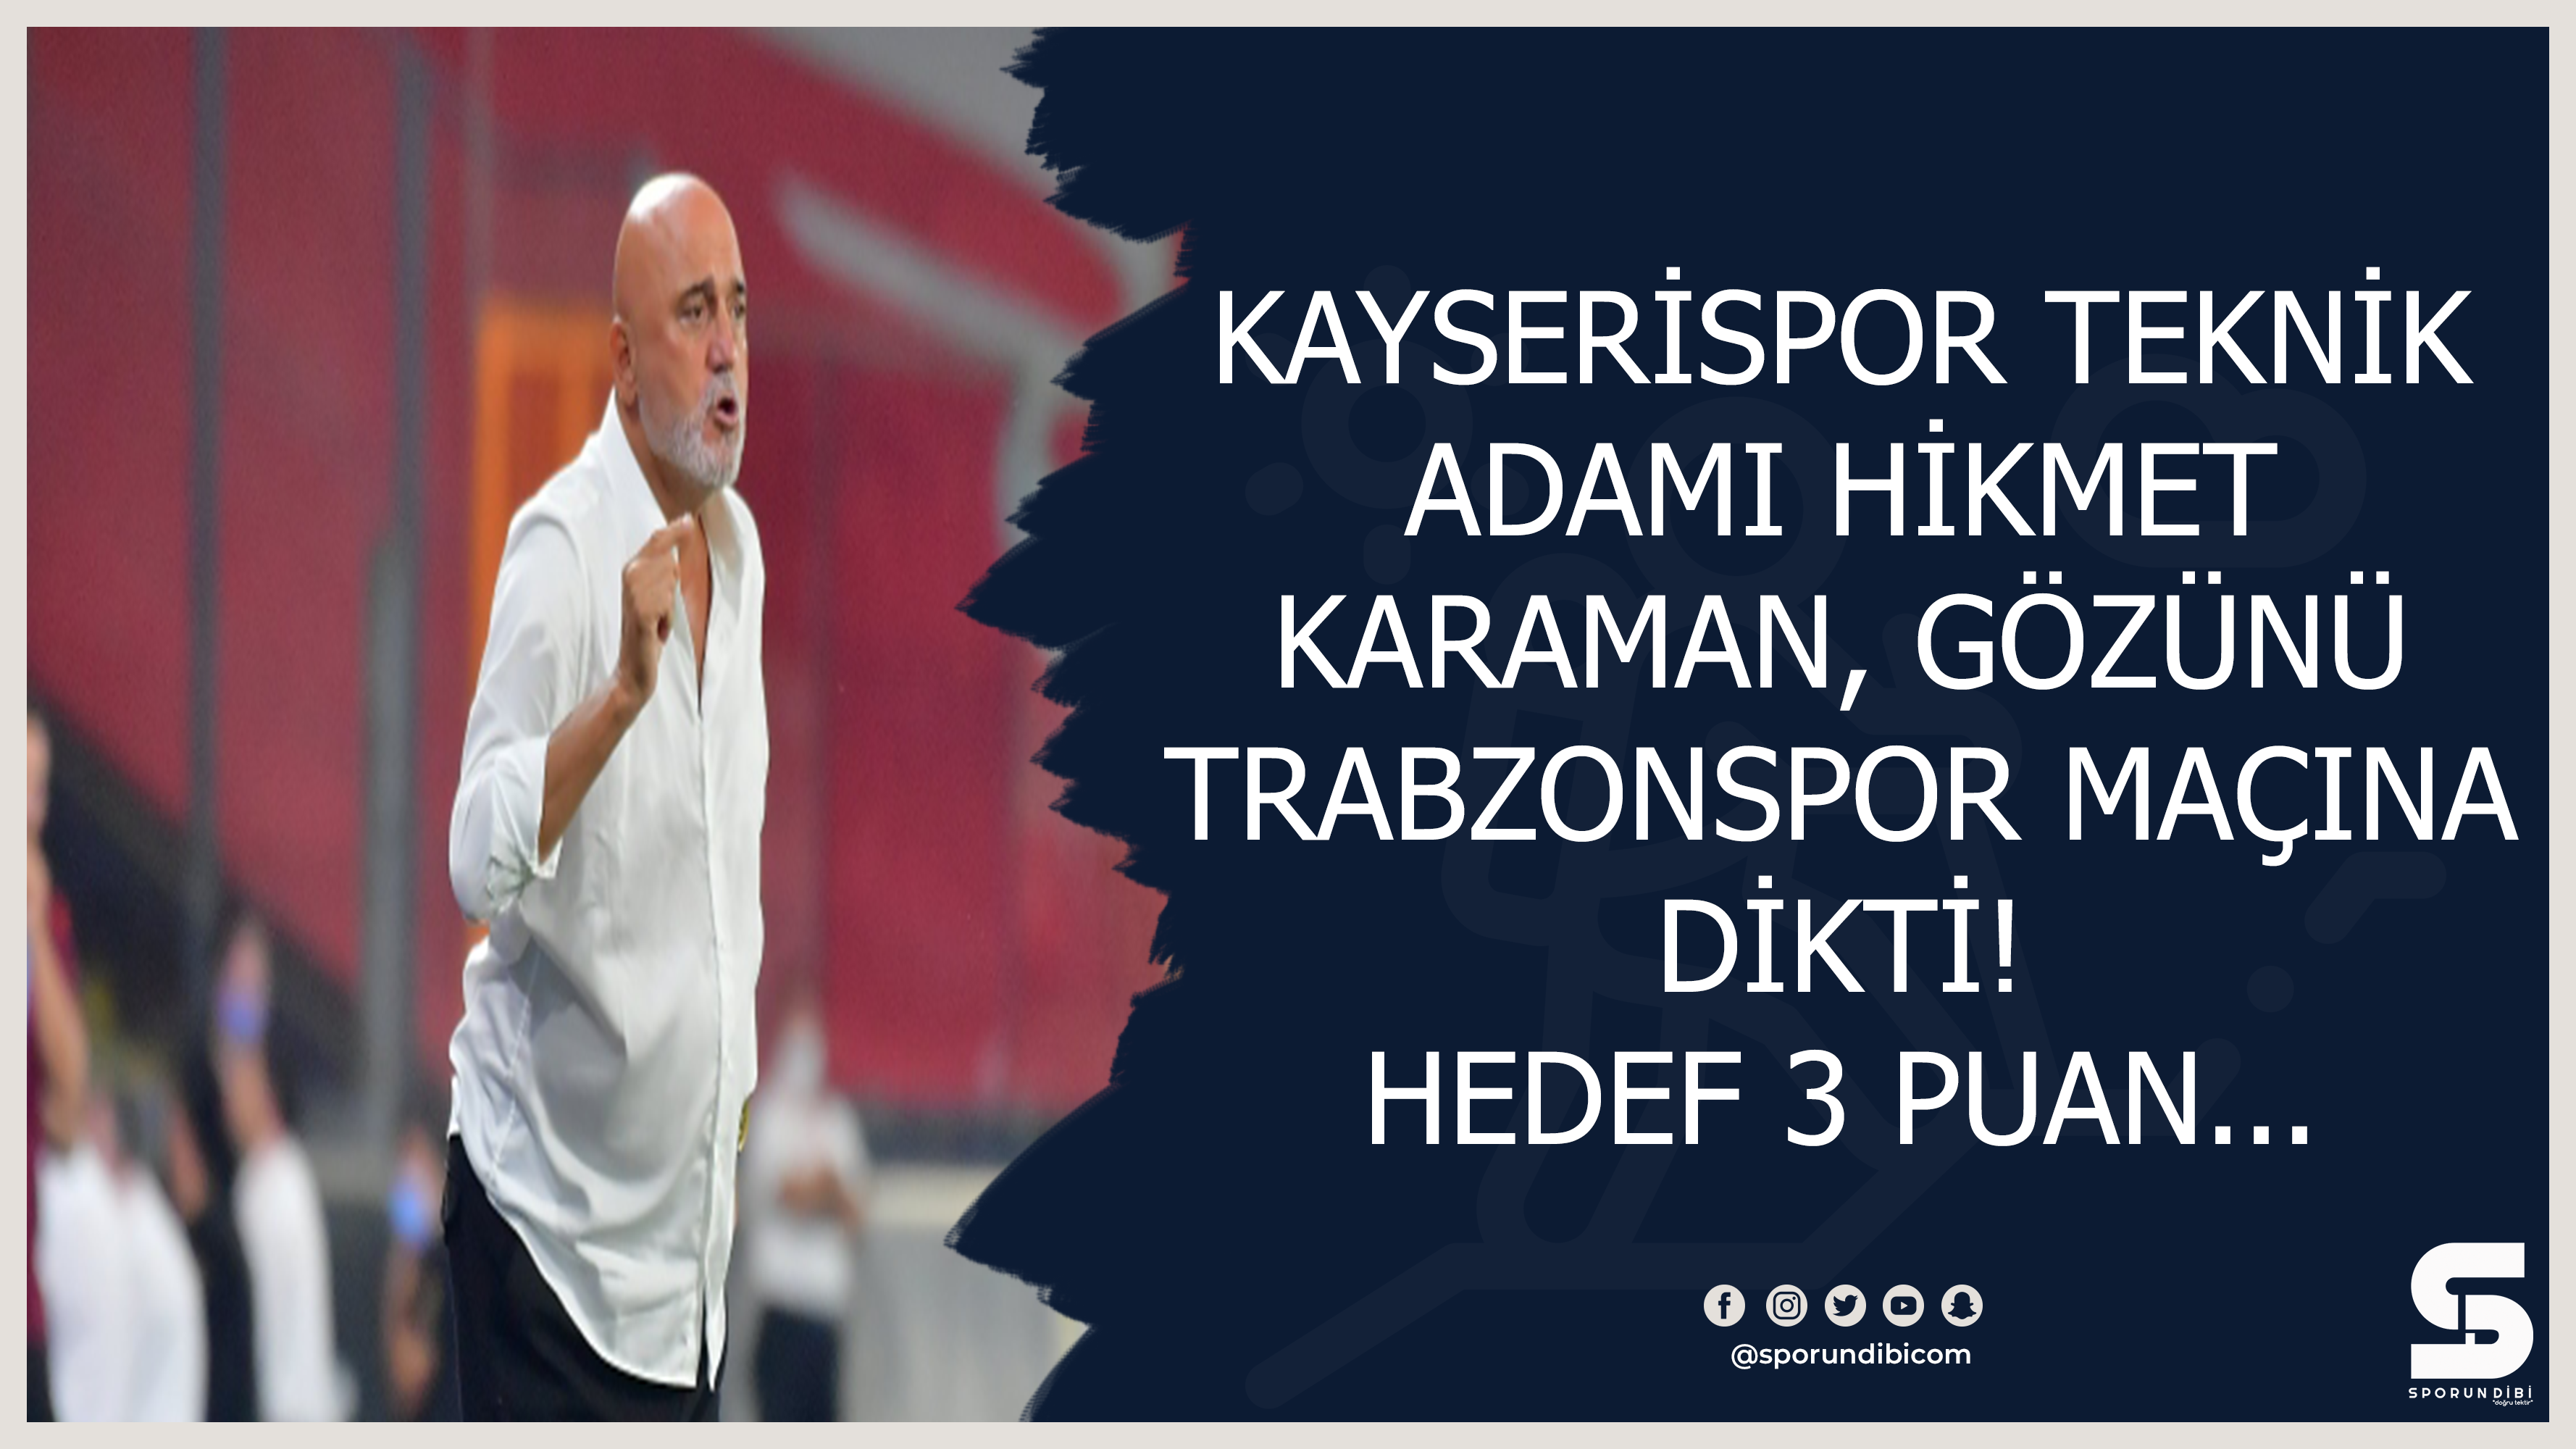 Kayserispor teknik adamı Hİkmet Karaman, gözünü Trabzonspor maçına dikti! Hedef 3 puan...